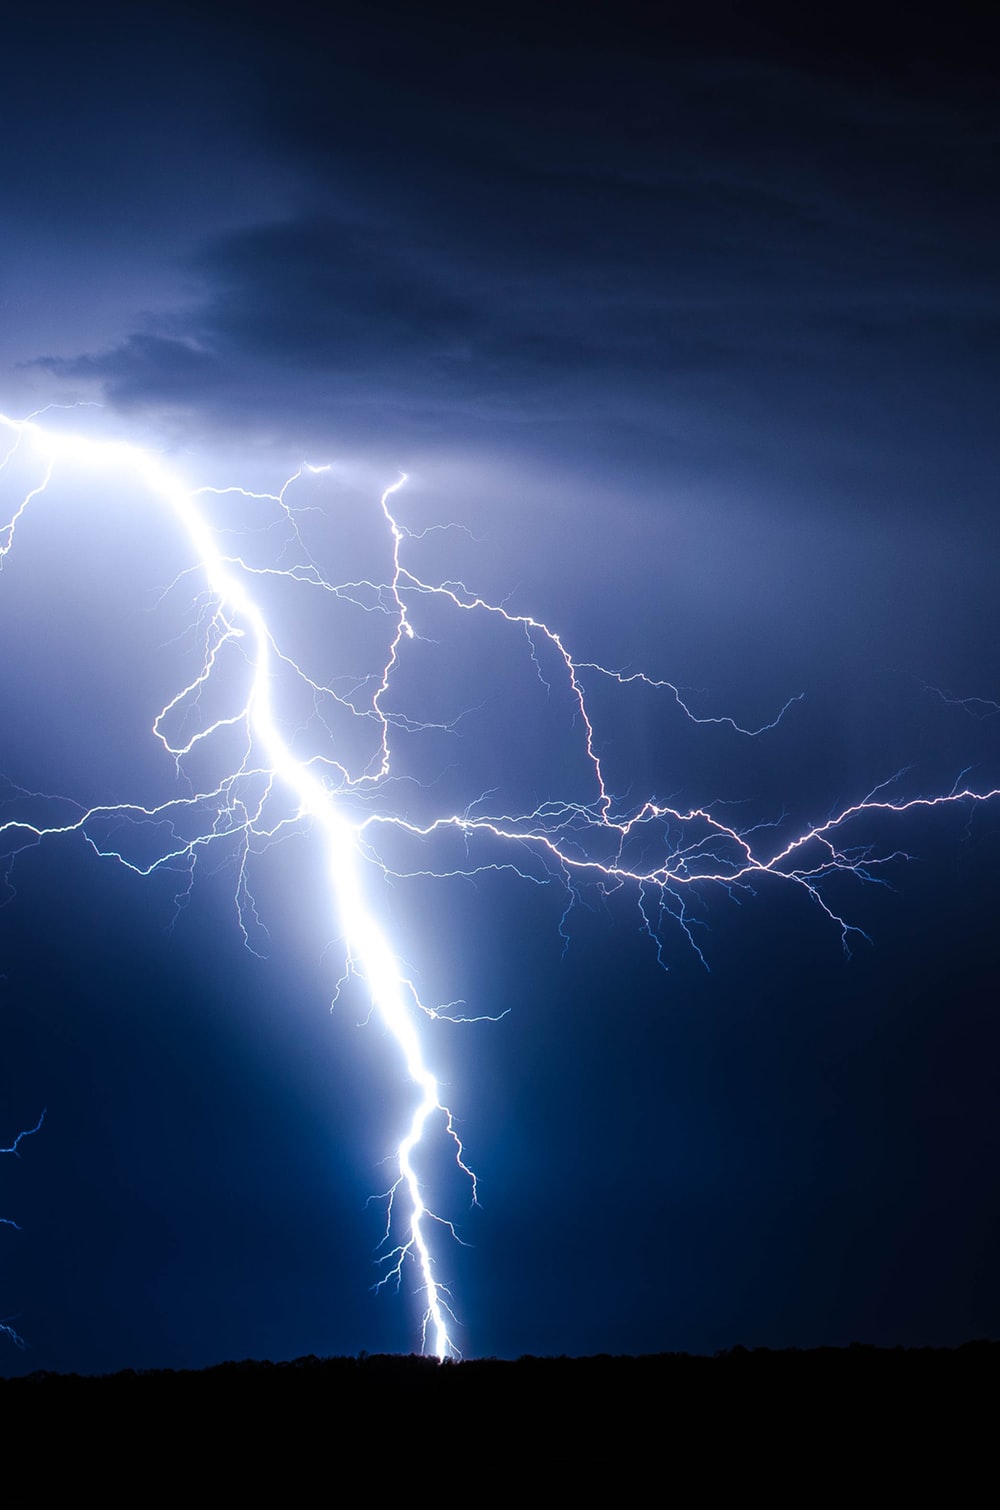 27 Thunder Pictures Download Images On Unsplash - Bolt Of Lightning , HD Wallpaper & Backgrounds